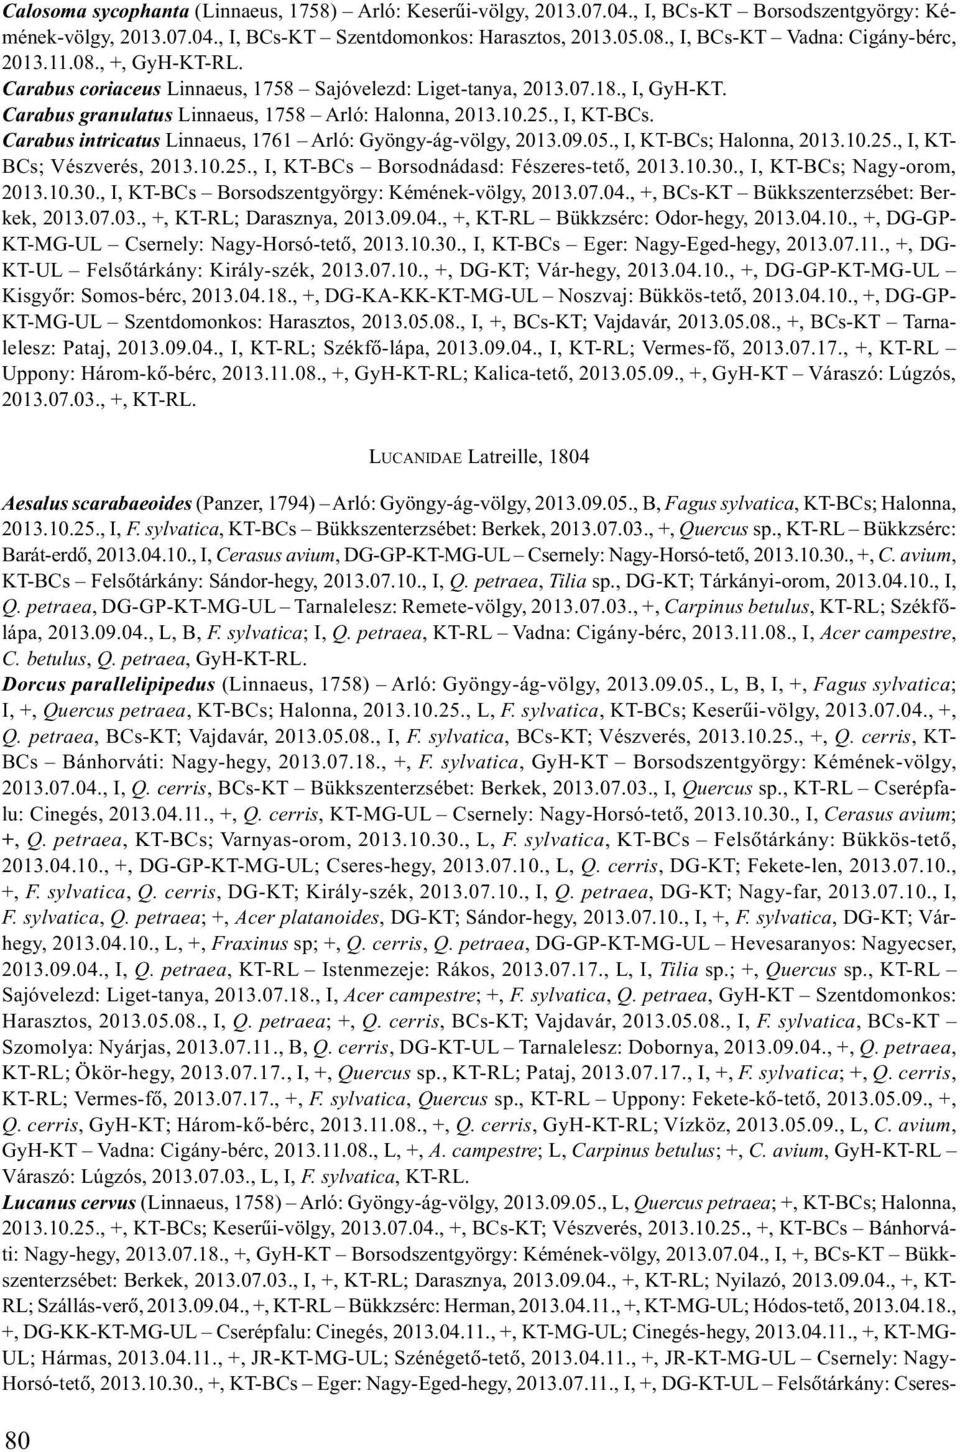 25., I, KT-BCs. Carabus intricatus Linnaeus, 1761 Arló: Gyöngy-ág-völgy, 2013.09.05., I, KT-BCs; Halonna, 2013.10.25., I, KT- BCs; Vészverés, 2013.10.25., I, KT-BCs Borsodnádasd: Fészeres-tetõ, 2013.